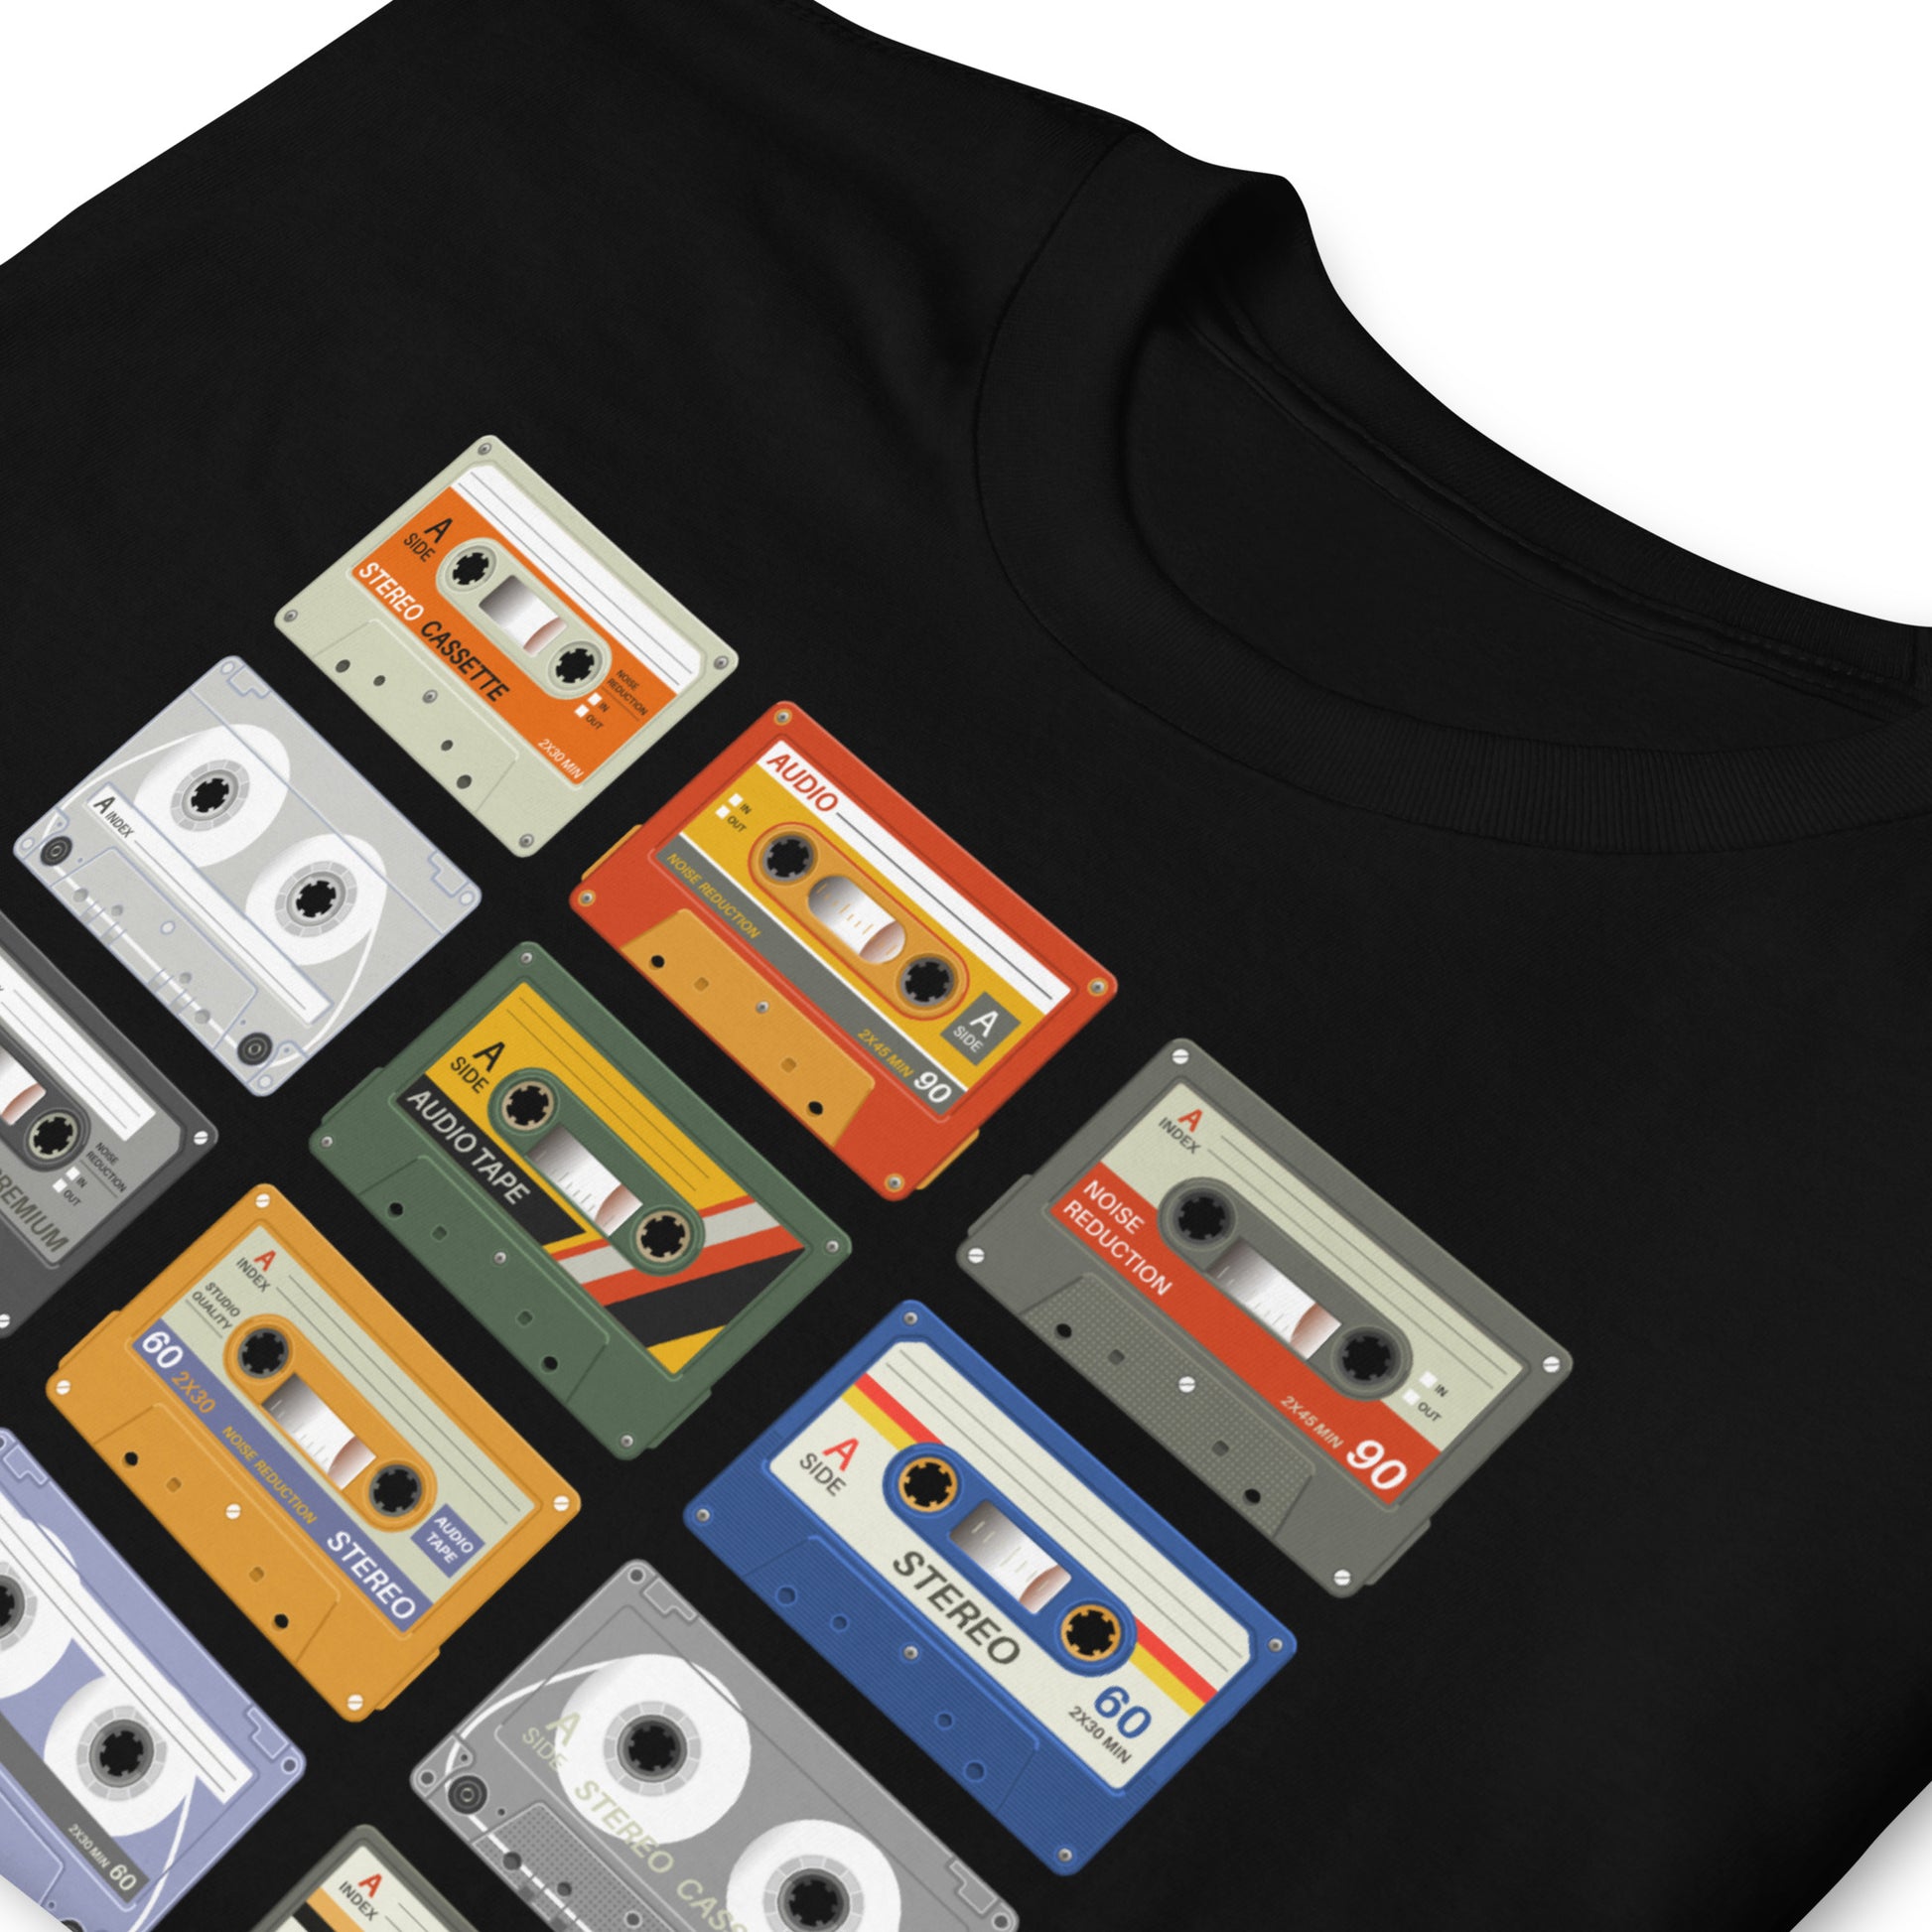 Camiseta Cassettes